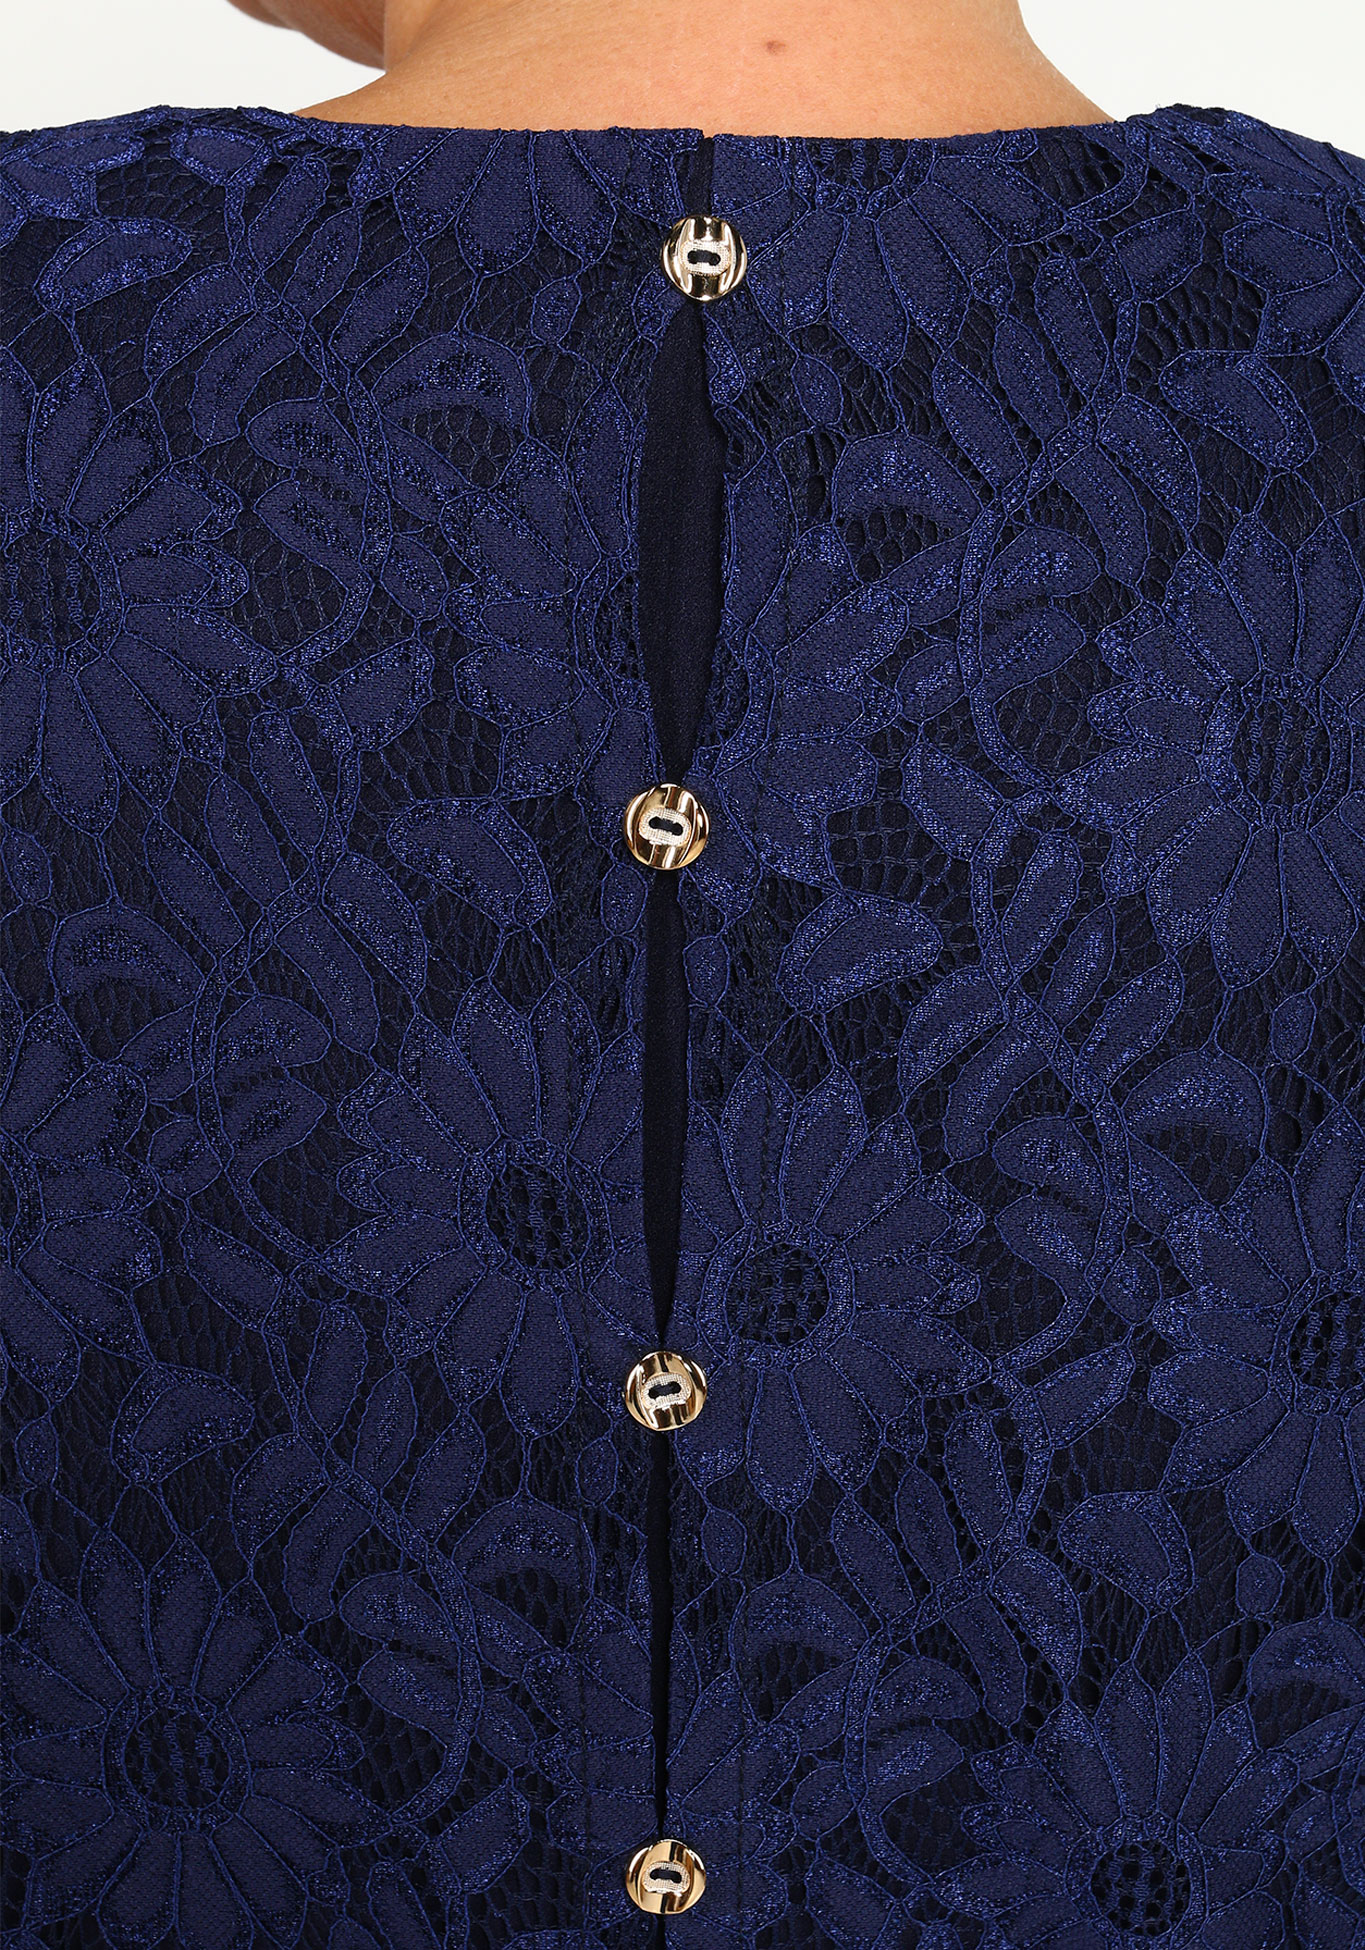 Платье с кружевной накидкой Bianka Modeno, размер 48, цвет синий - фото 9